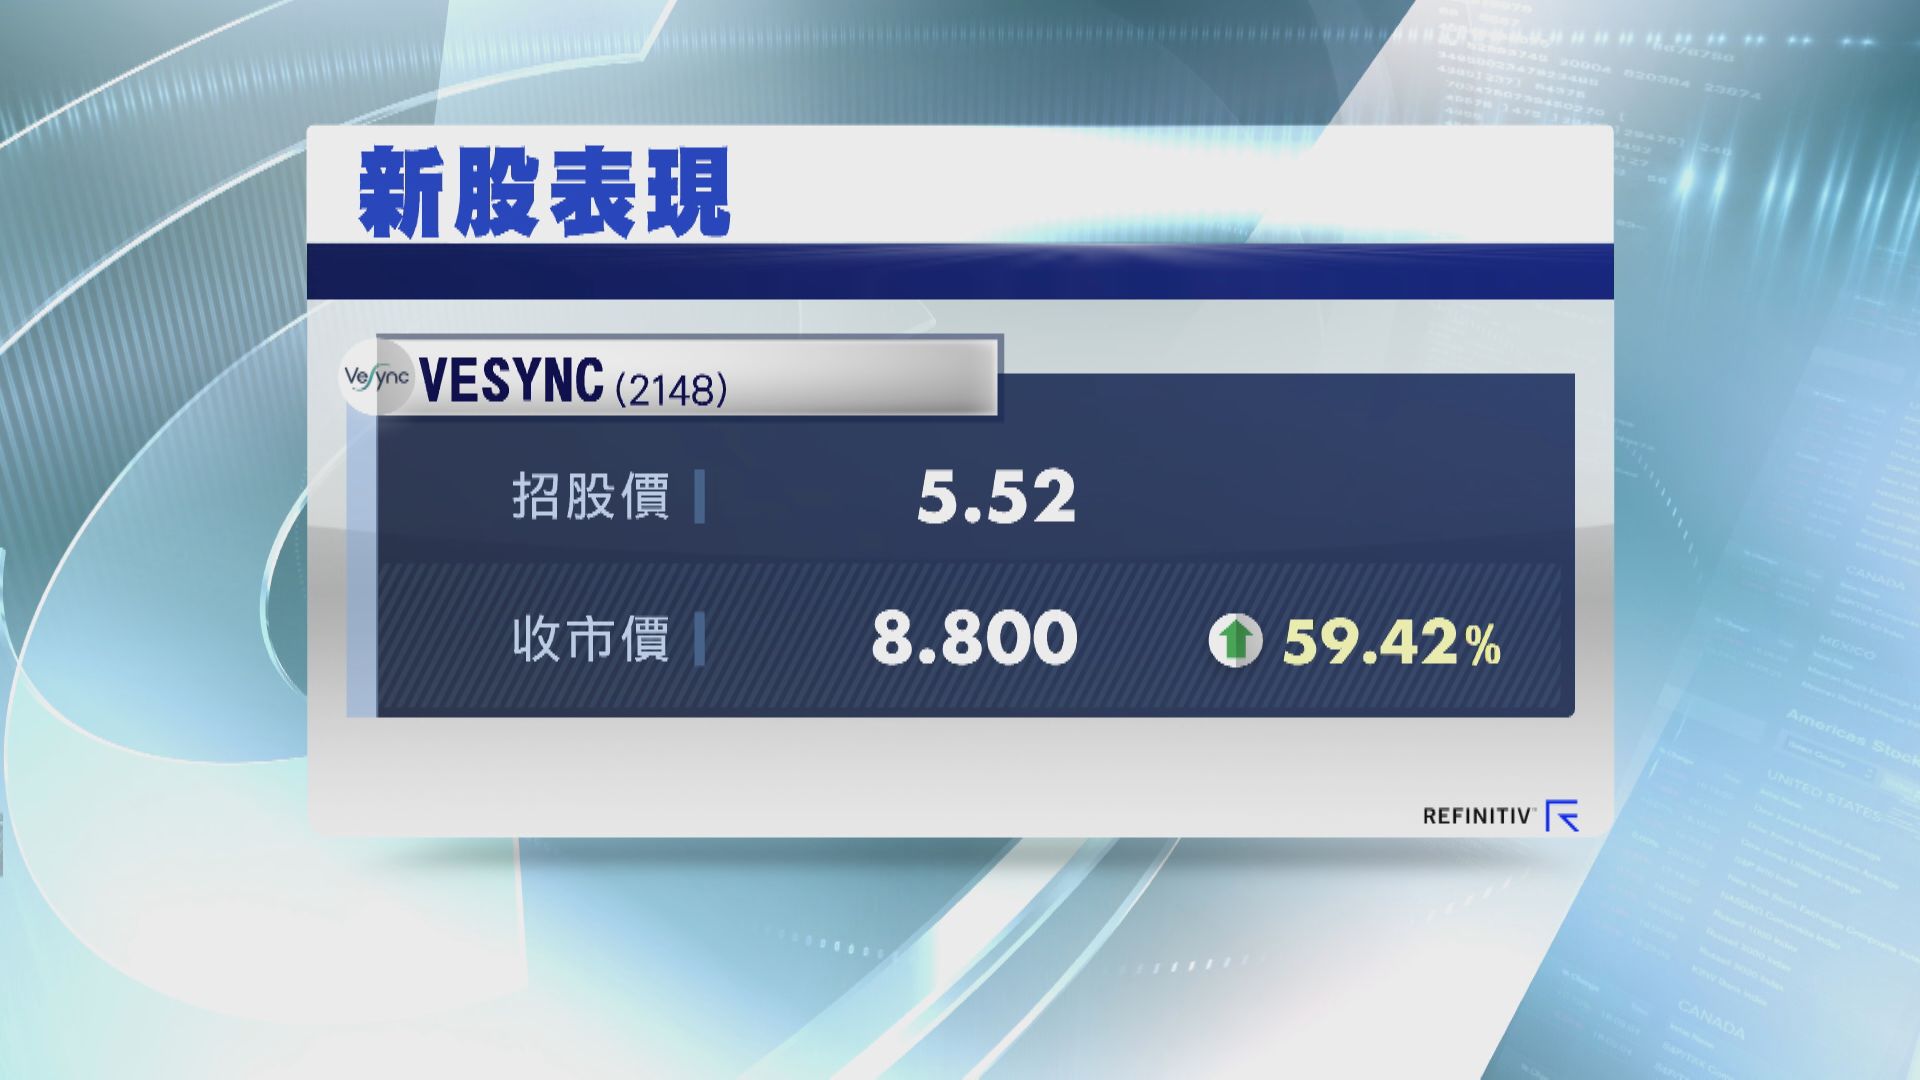 Vesync炒高59% 一手帳賺$3280